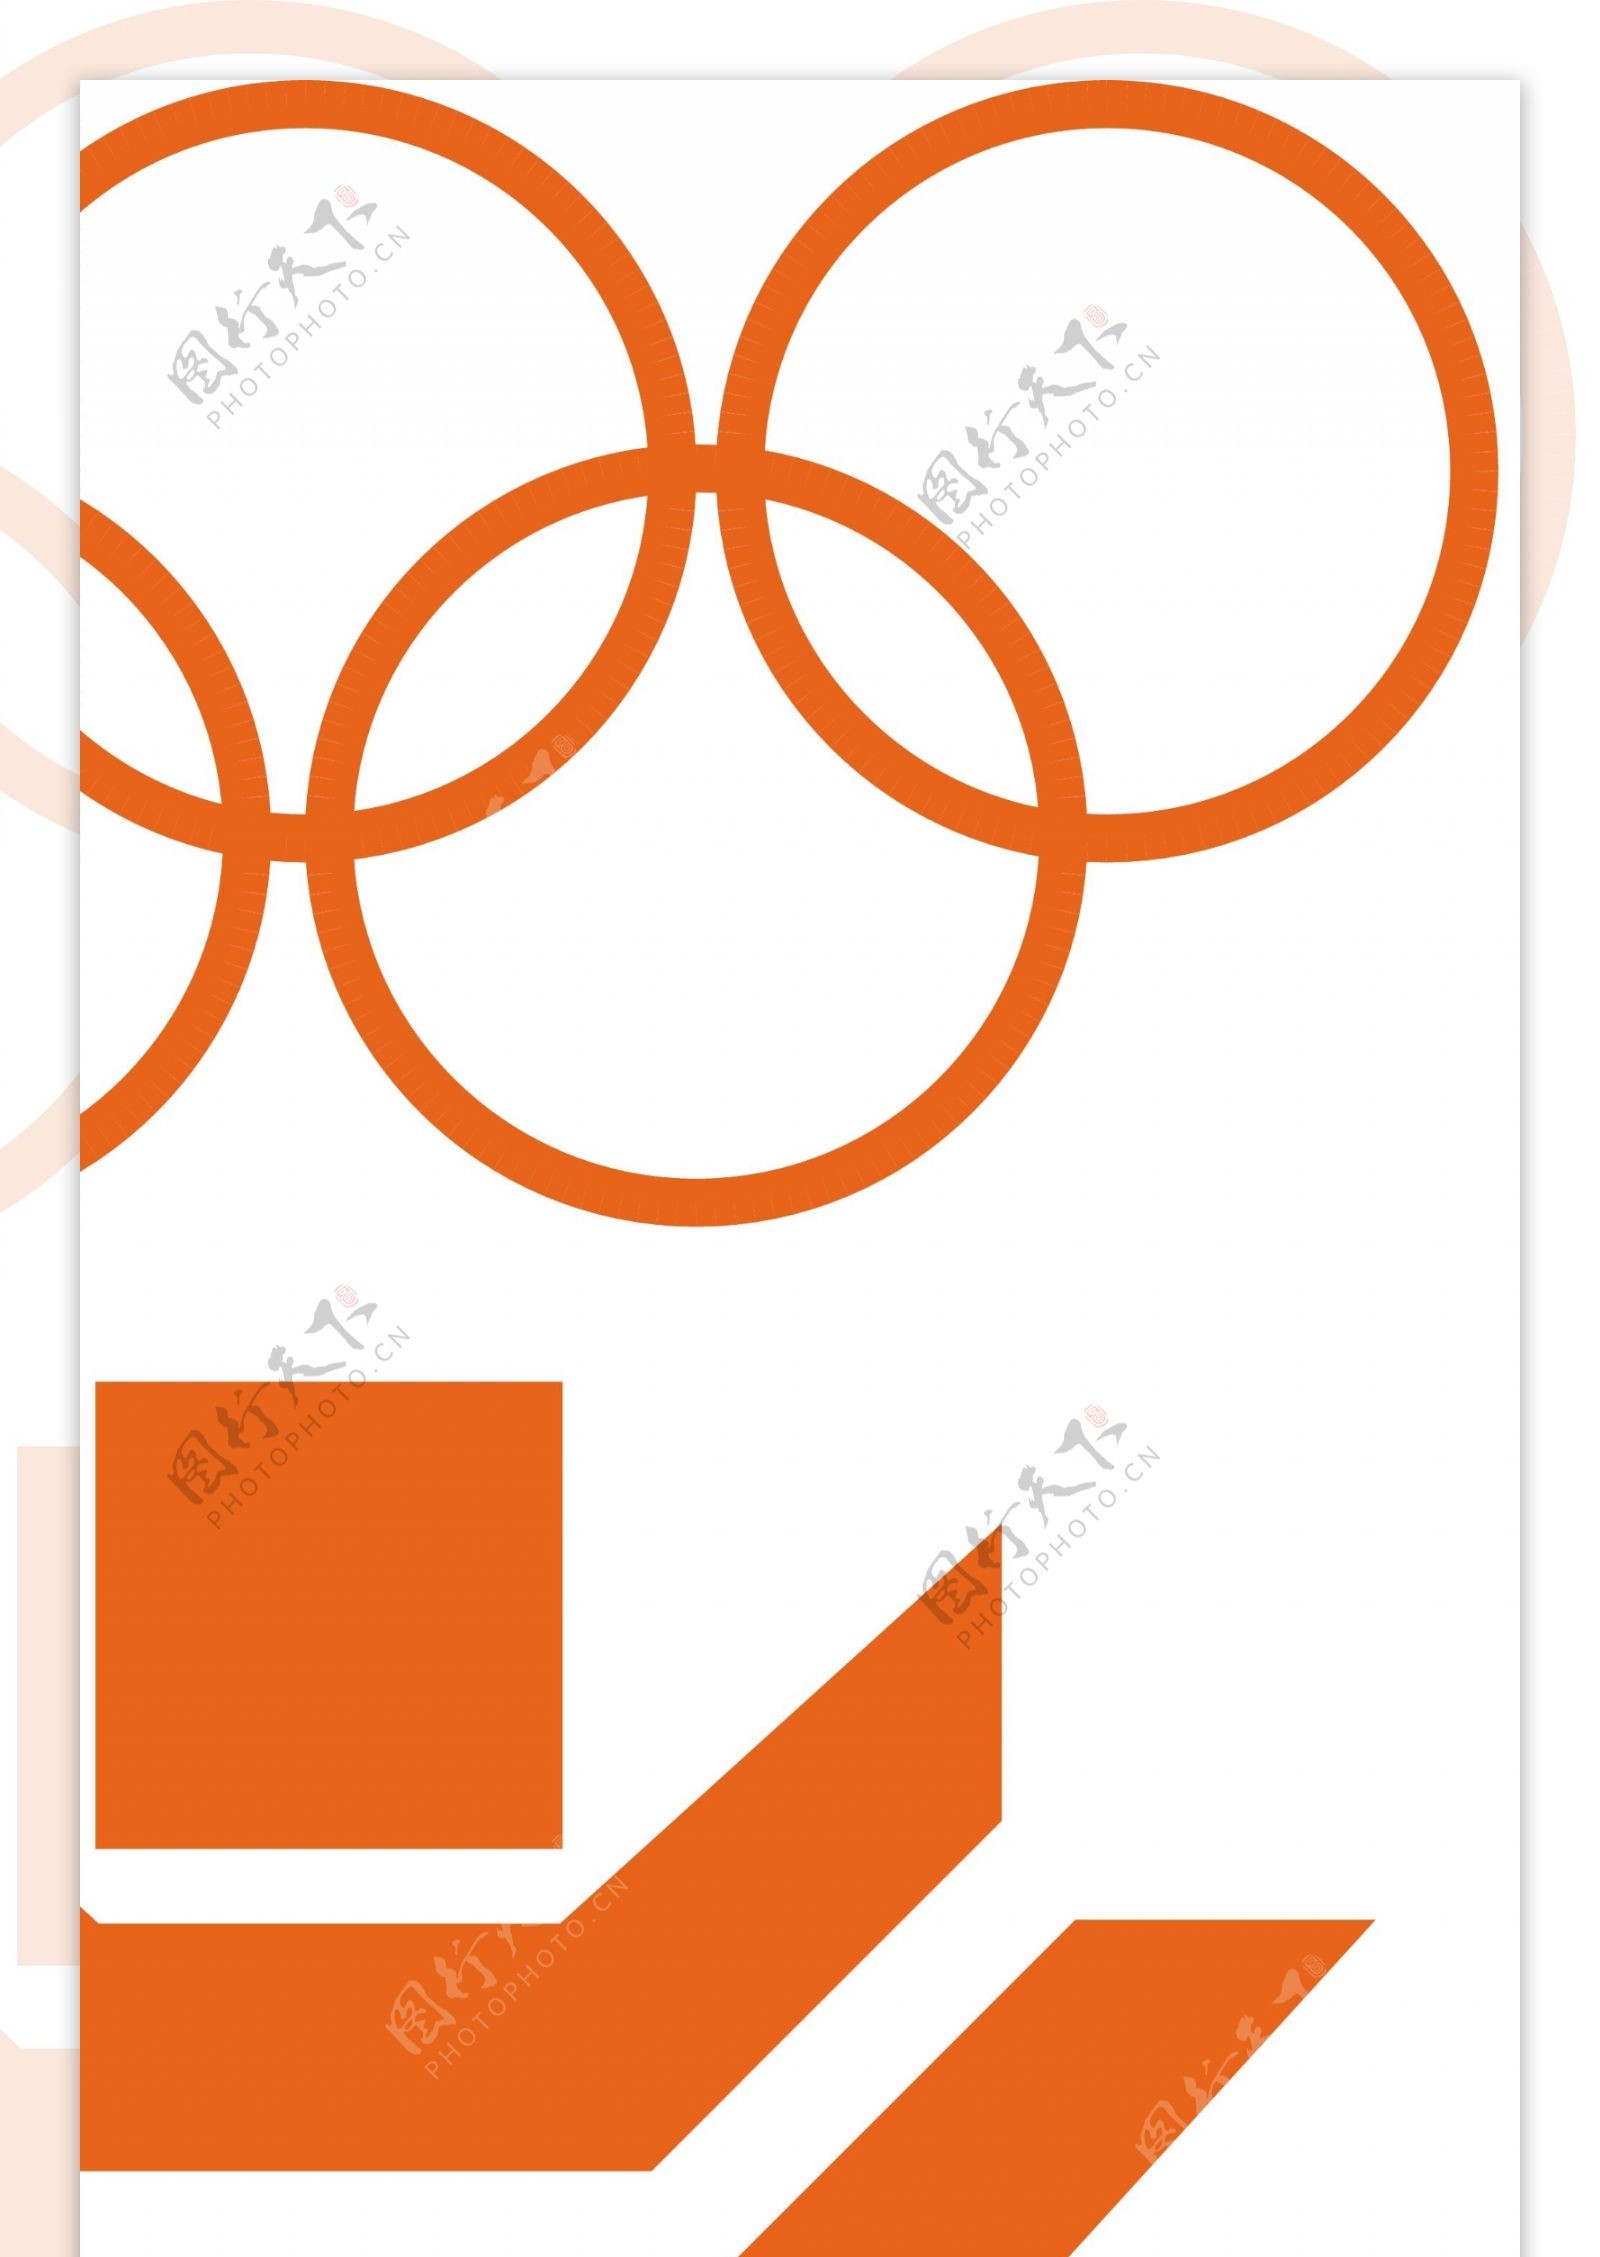 萨拉热窝1984冬季奥运会标志